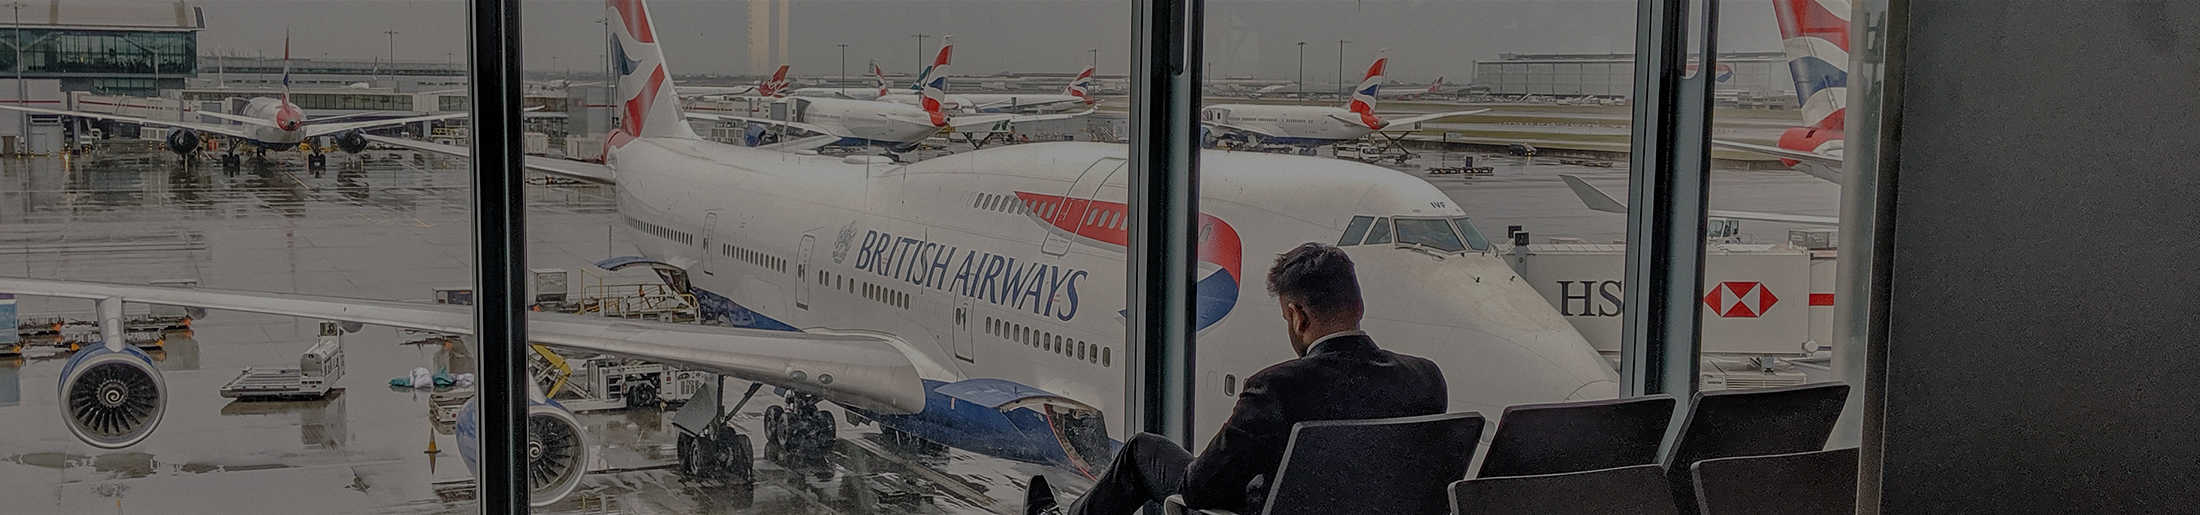 British Airways Case Study Header Image